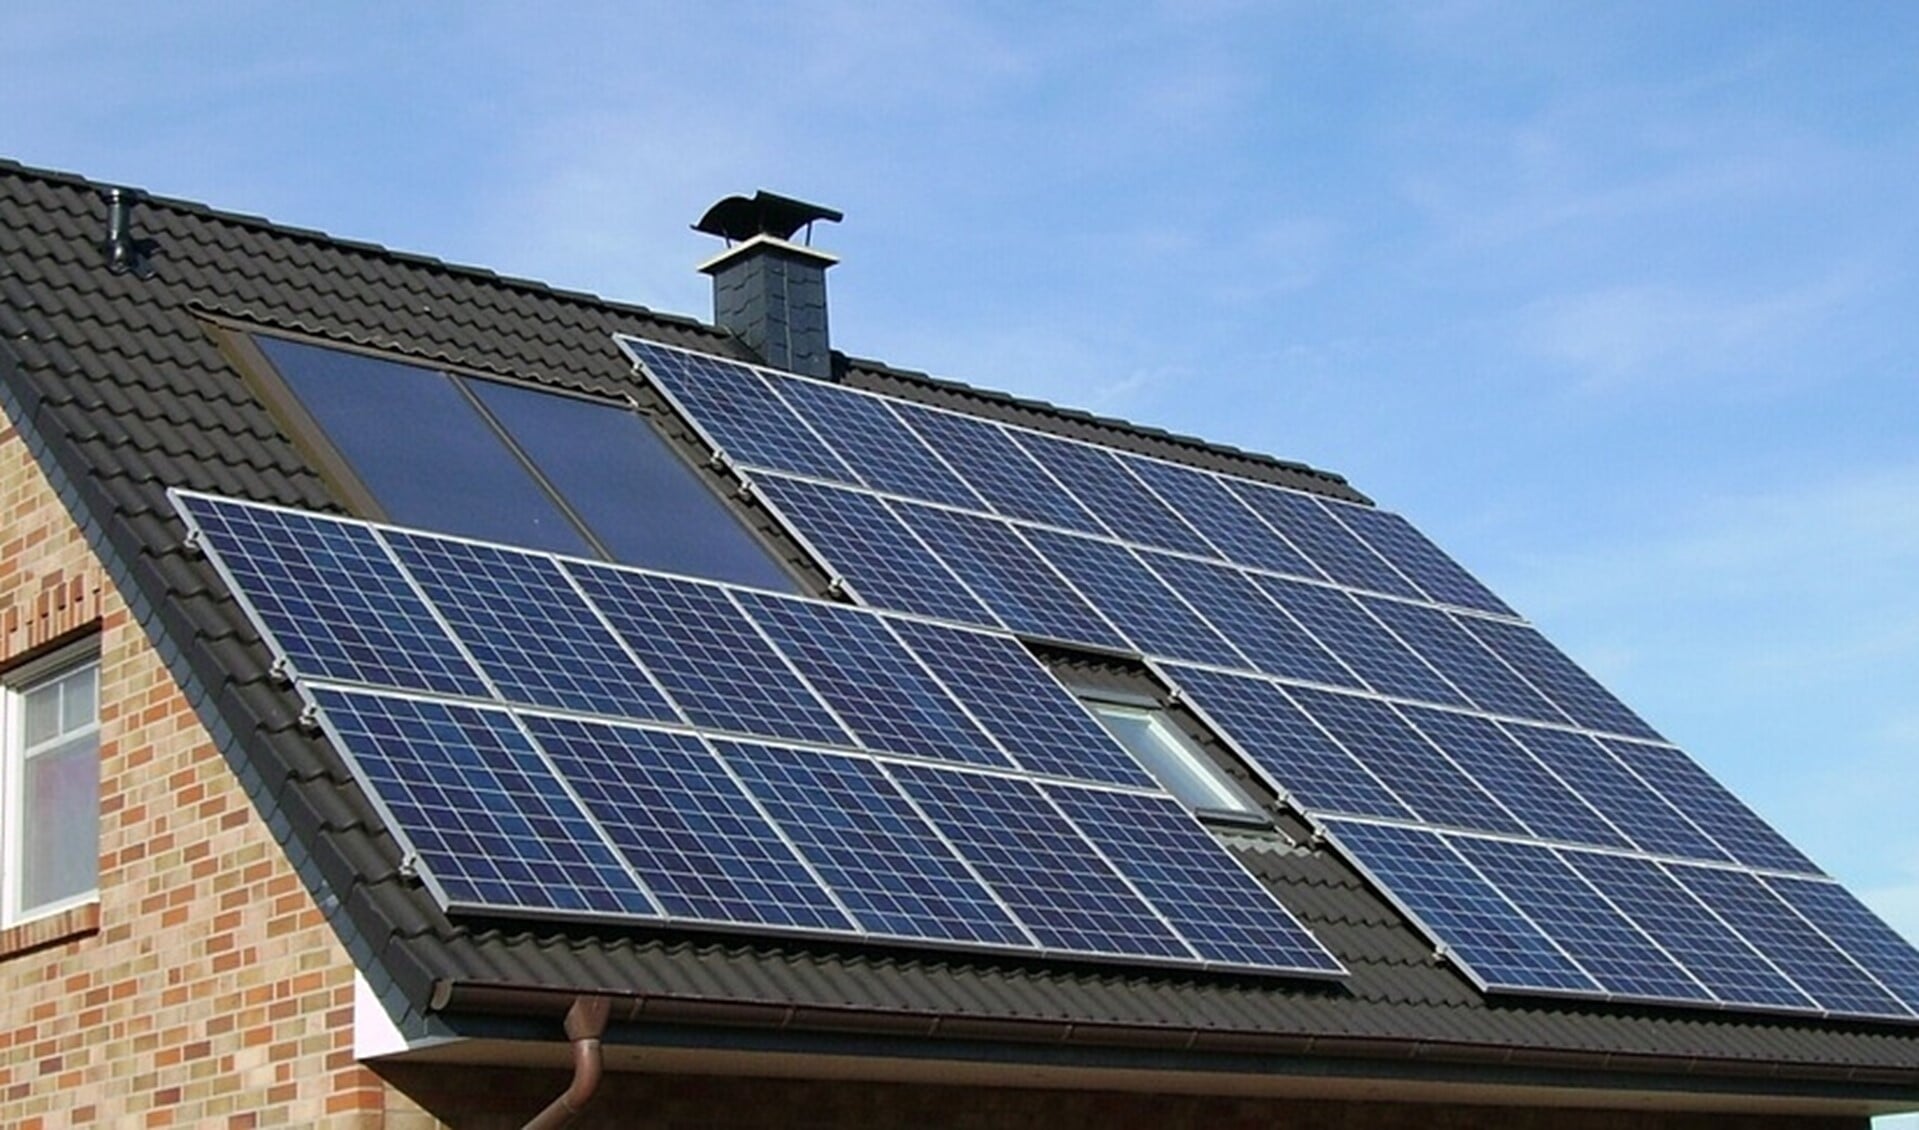 Vanaf maandag 14 januari kan men weer subsidie aanvragen voor het aanbrengen van onder andere zonnepanelen, groene daken en isolatie. 